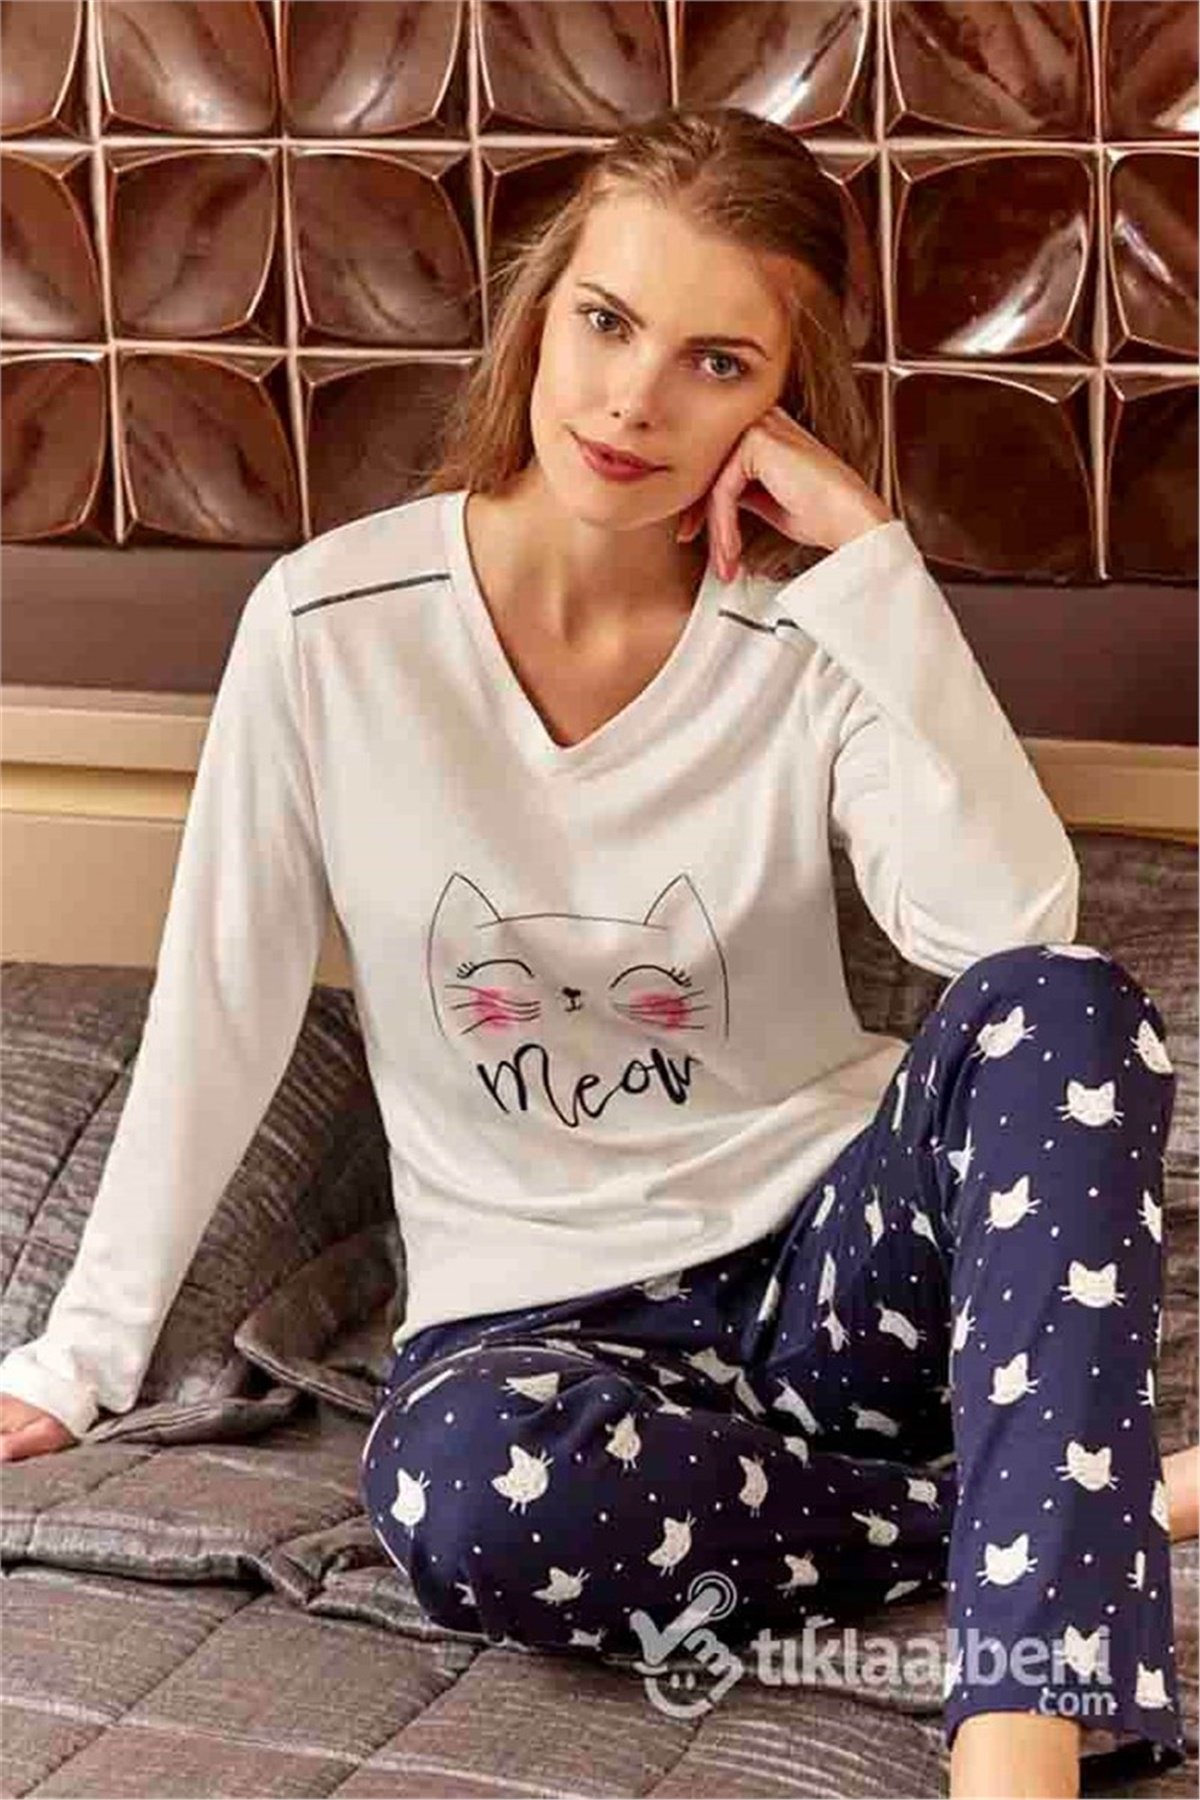 Eros ESK 20604 Kedi Desenli Bayan Pijama Takımı